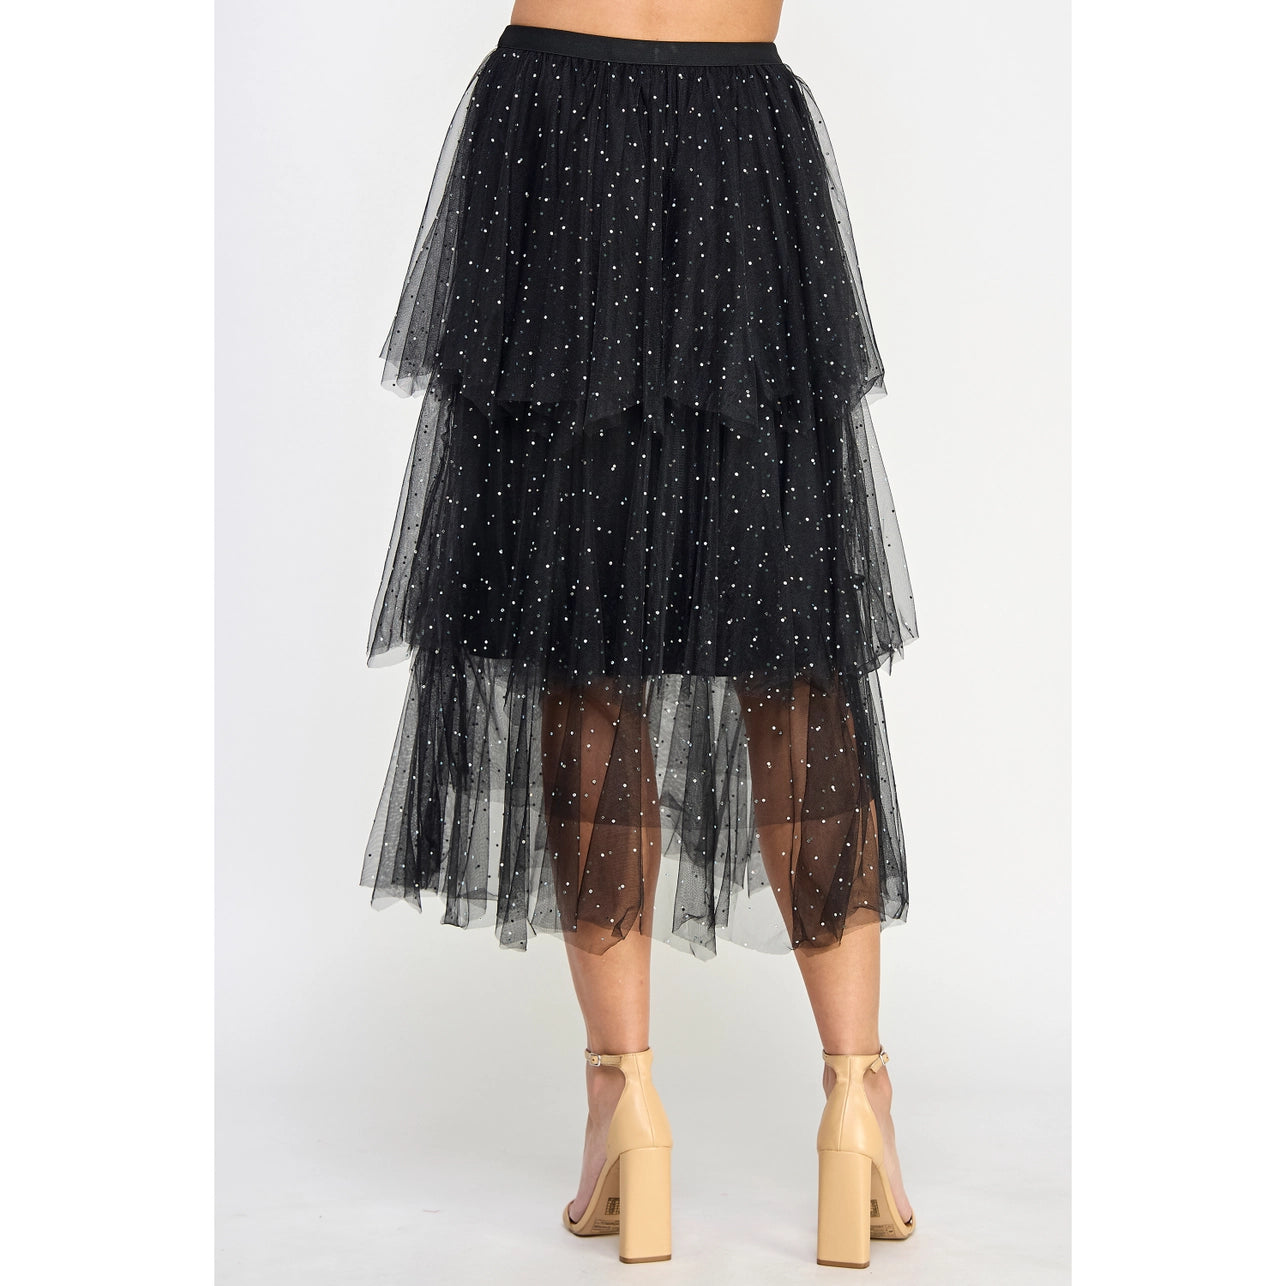 Studded Rhinestone Tiered Tulle Skirt - Final Sale Item